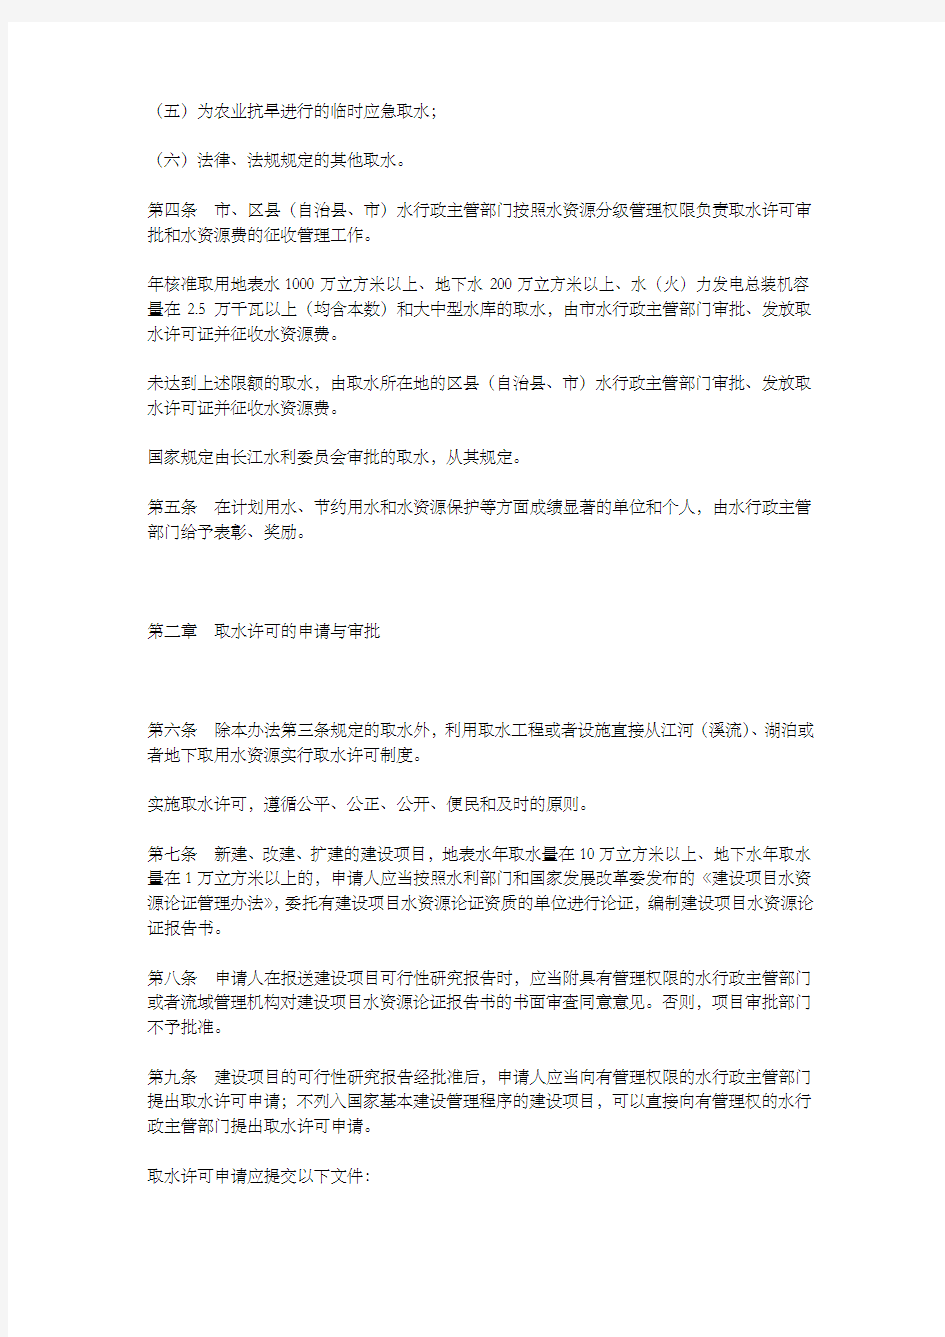 重庆市取水许可和水资源费征收管理办法